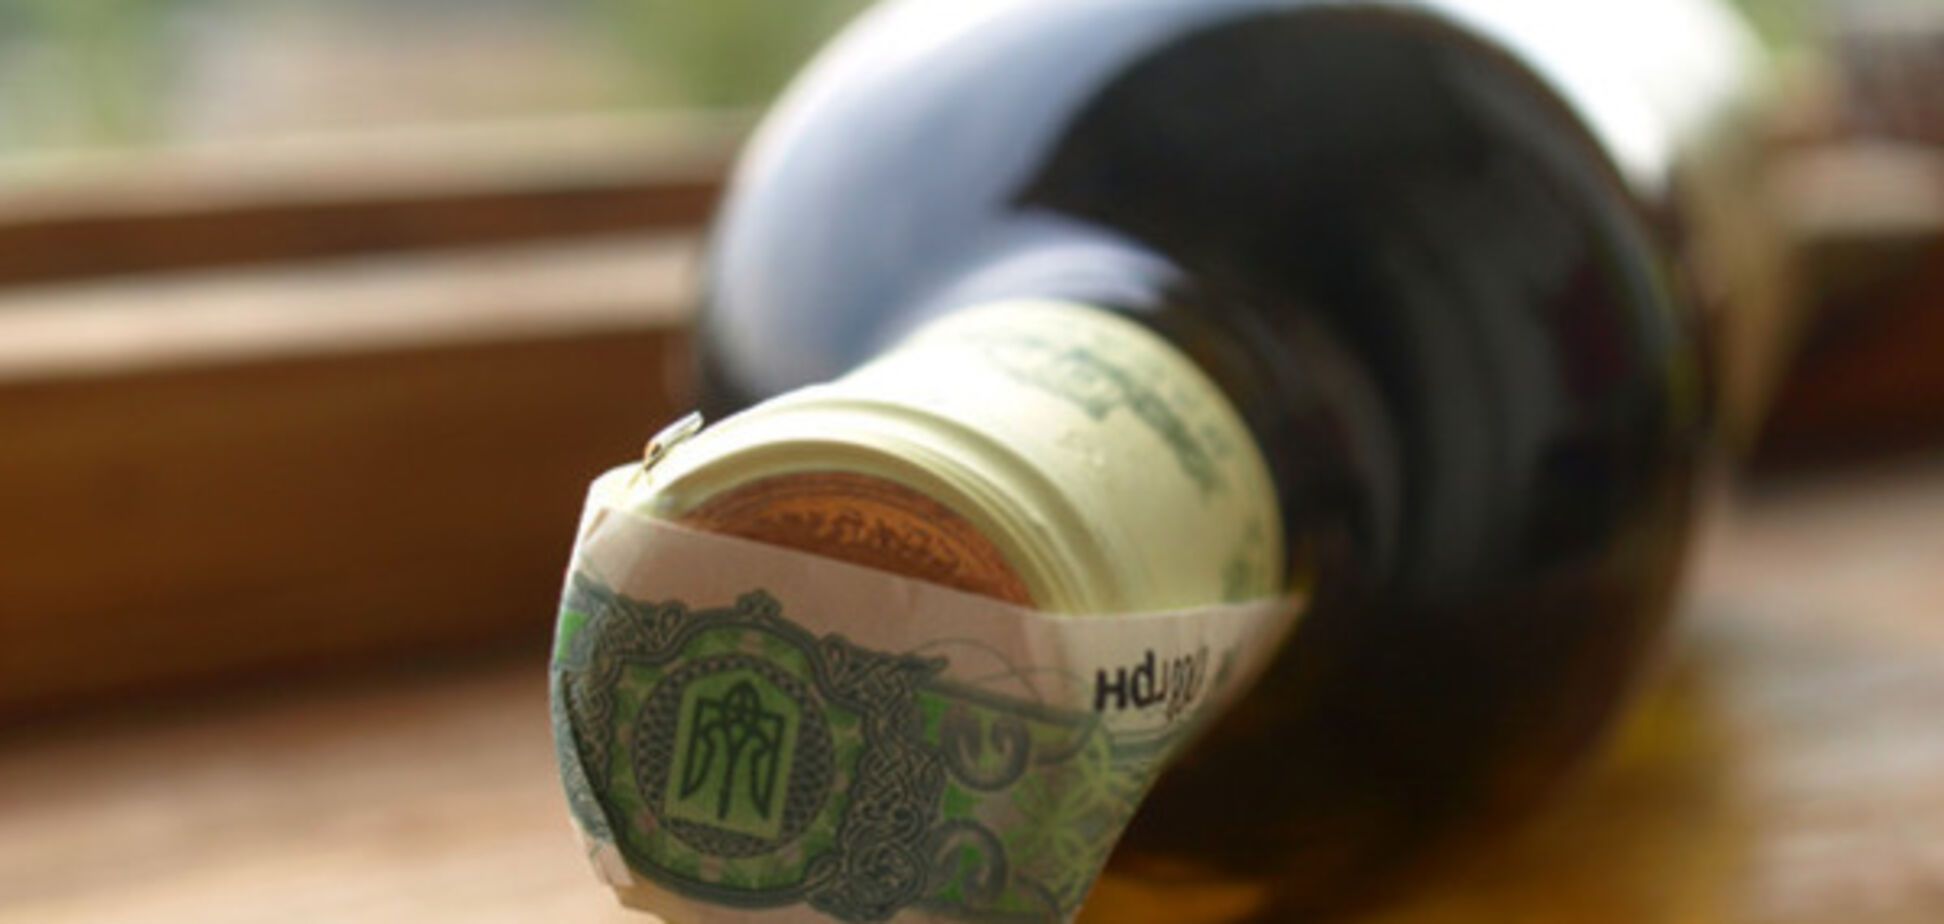 Запорожцы заплатили более 70 миллионов за алкоголь и табак